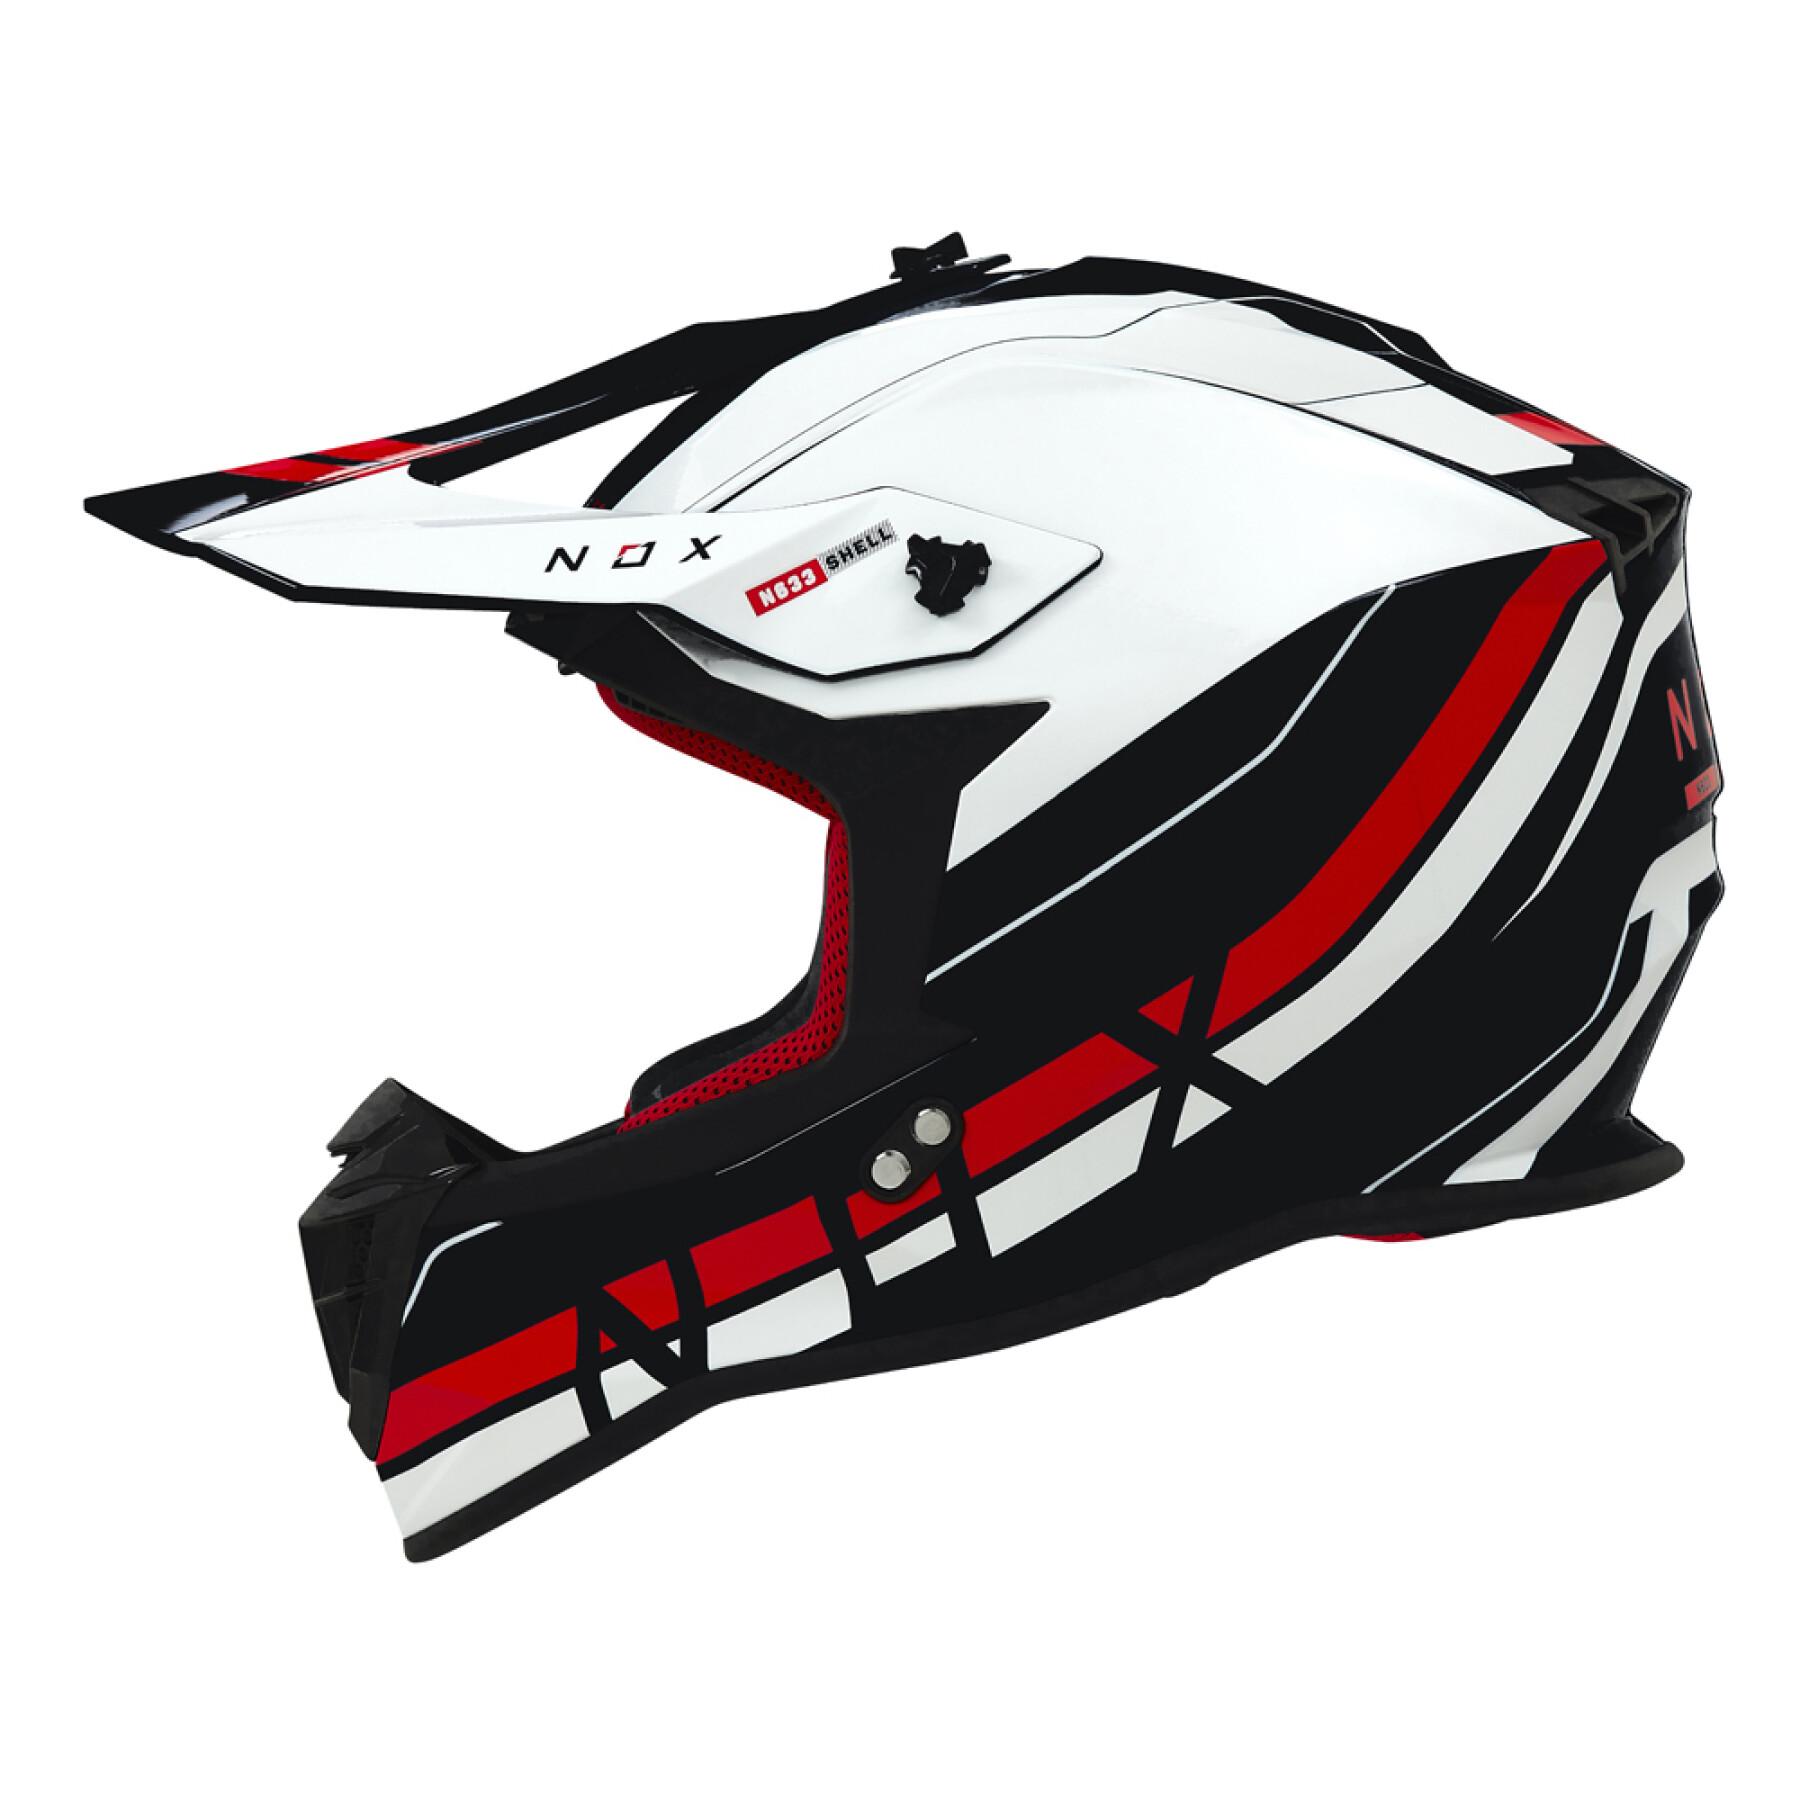 Motorcycle helmet Nox N633 Airshock